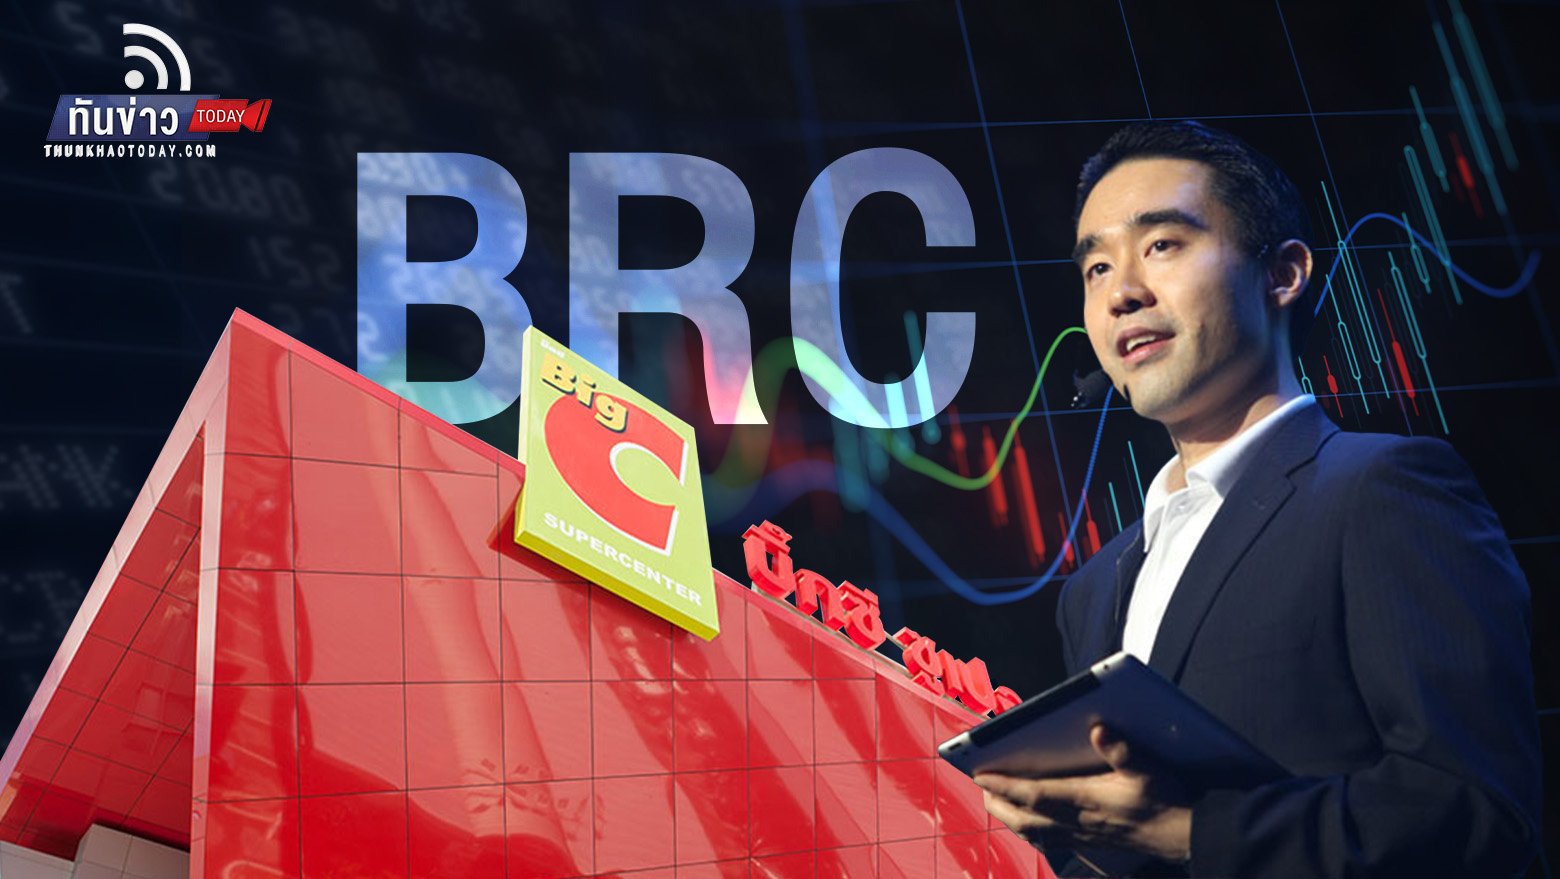 หุ้น “Big C” เตรียมเข้าตลาดหลักทรัพย์ฯ อีกครั้งในชื่อใหม่ “BRC”  ภายใต้การบริหารของ “อัศวิน เตชะเจริญวิกุล”